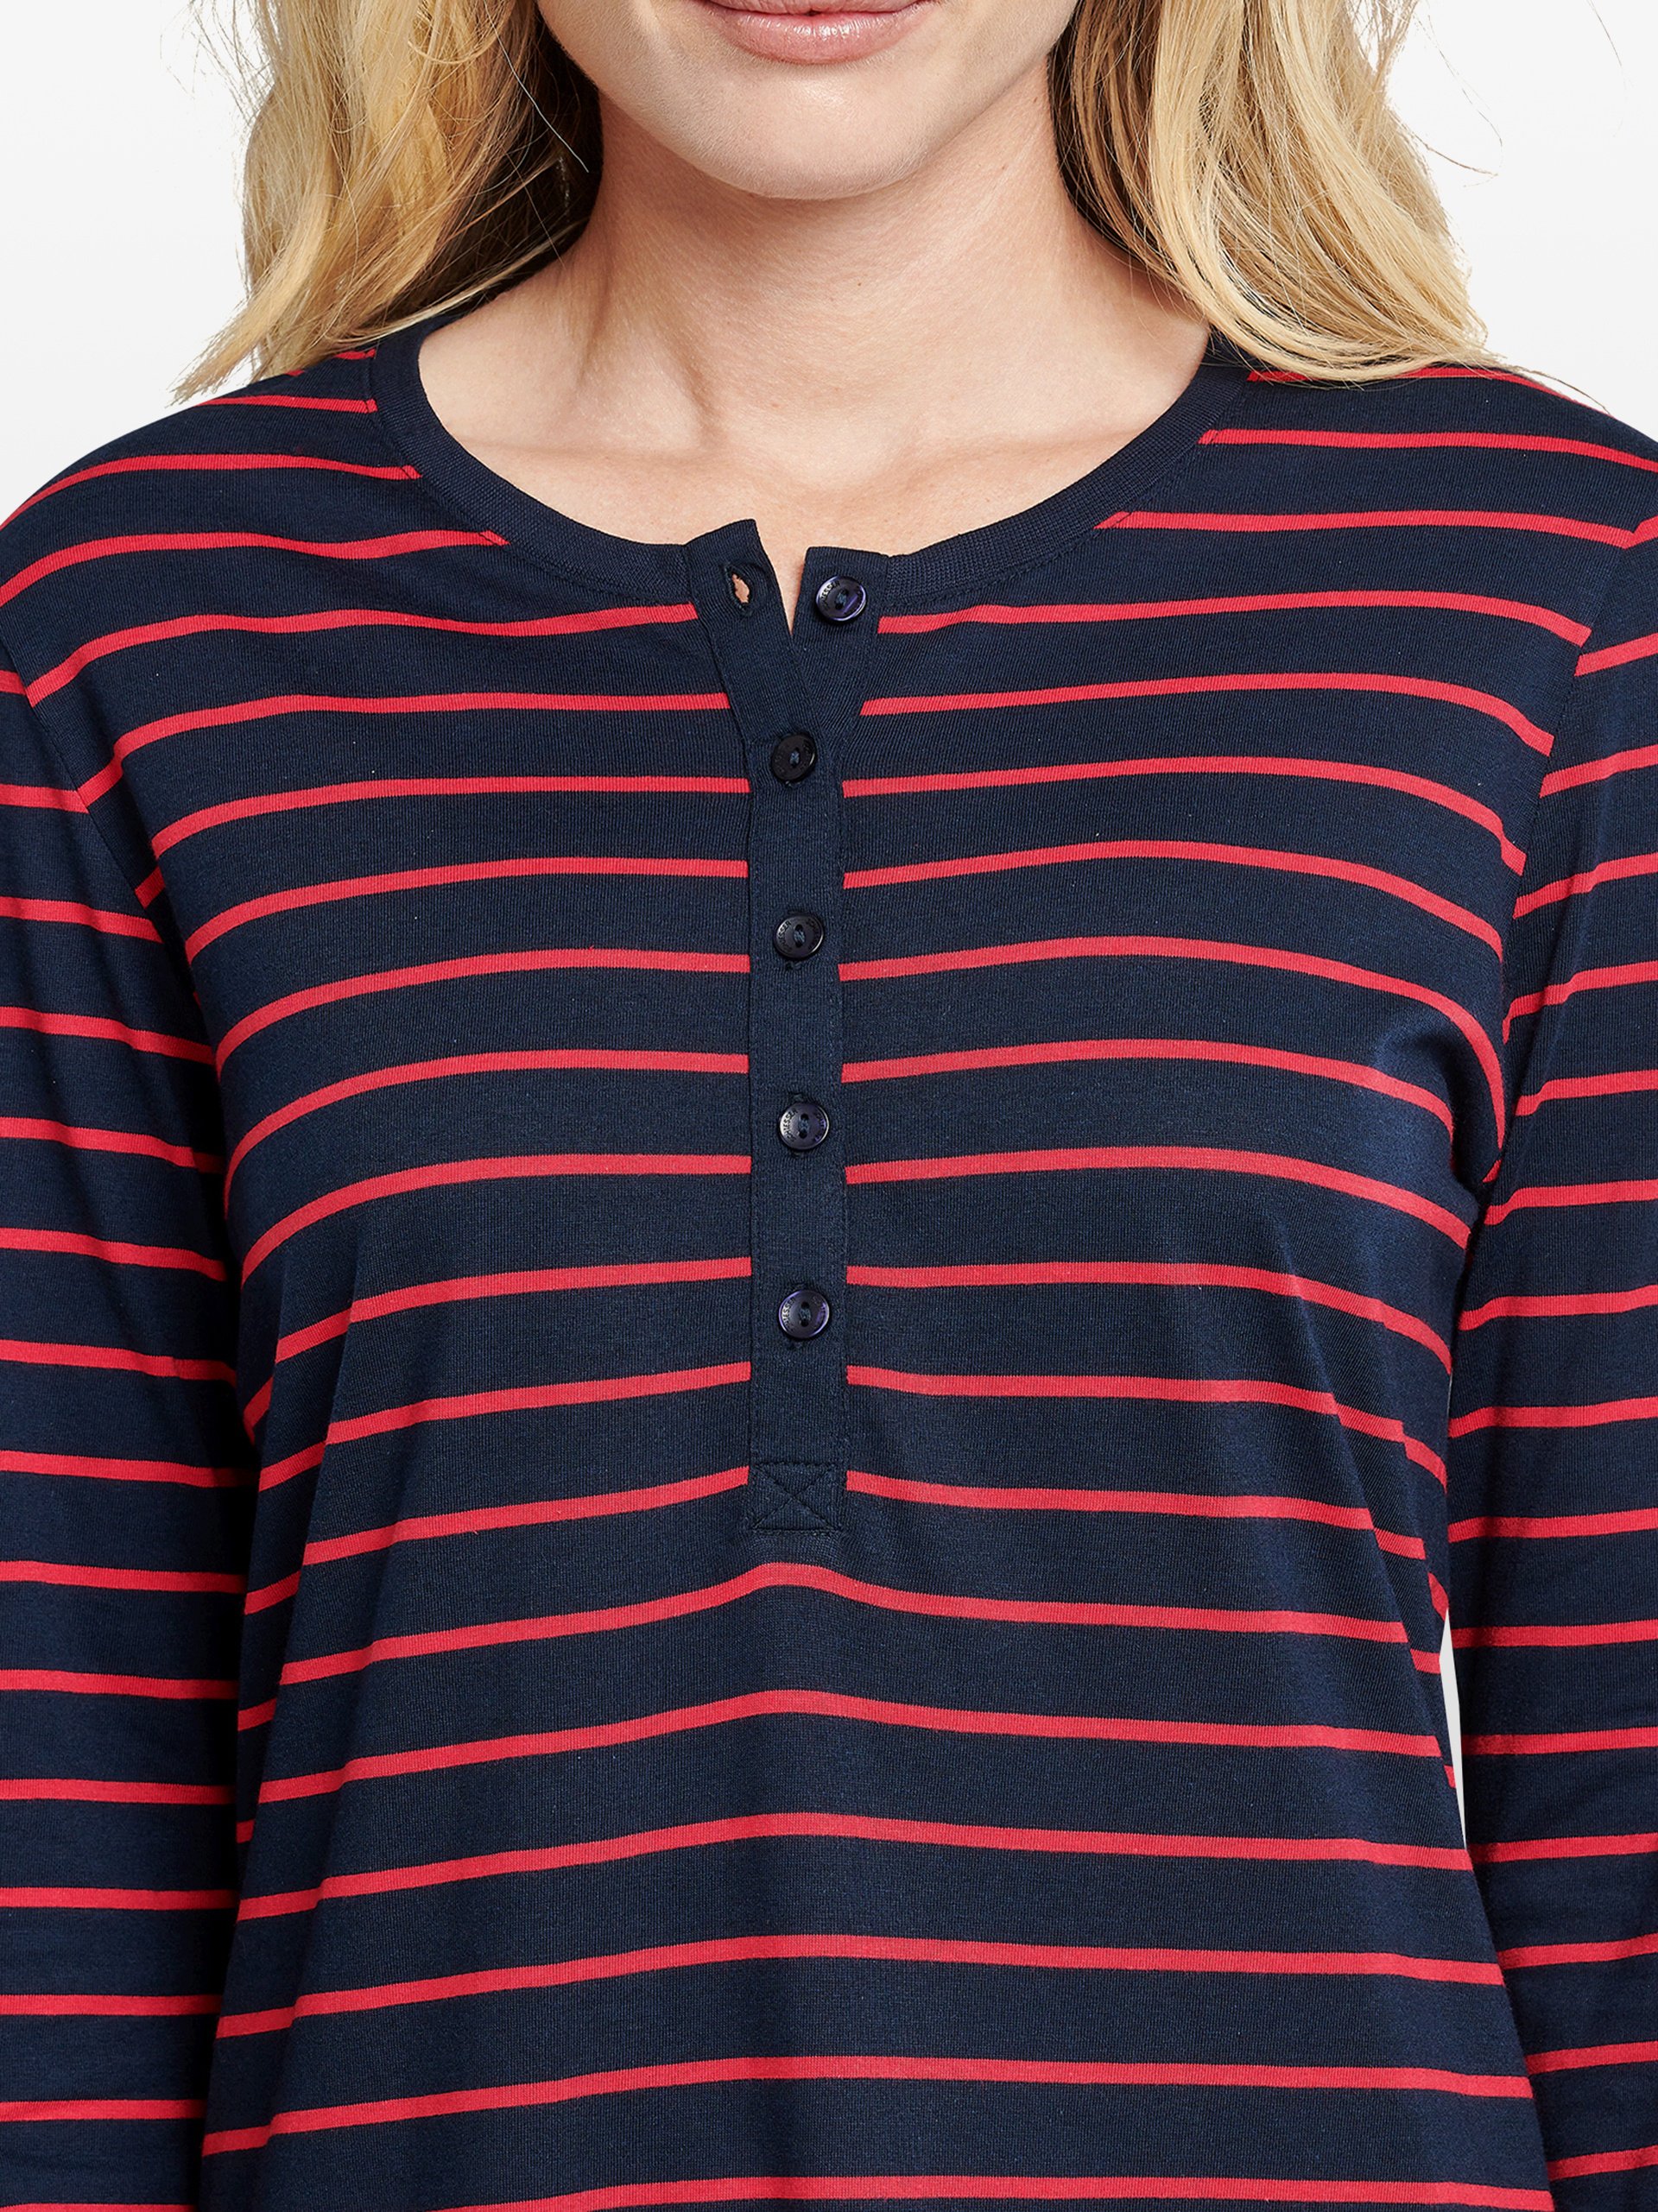 Schiesser Damen Langarm Nachthemd kaufen 95cm - Sleepshirt online